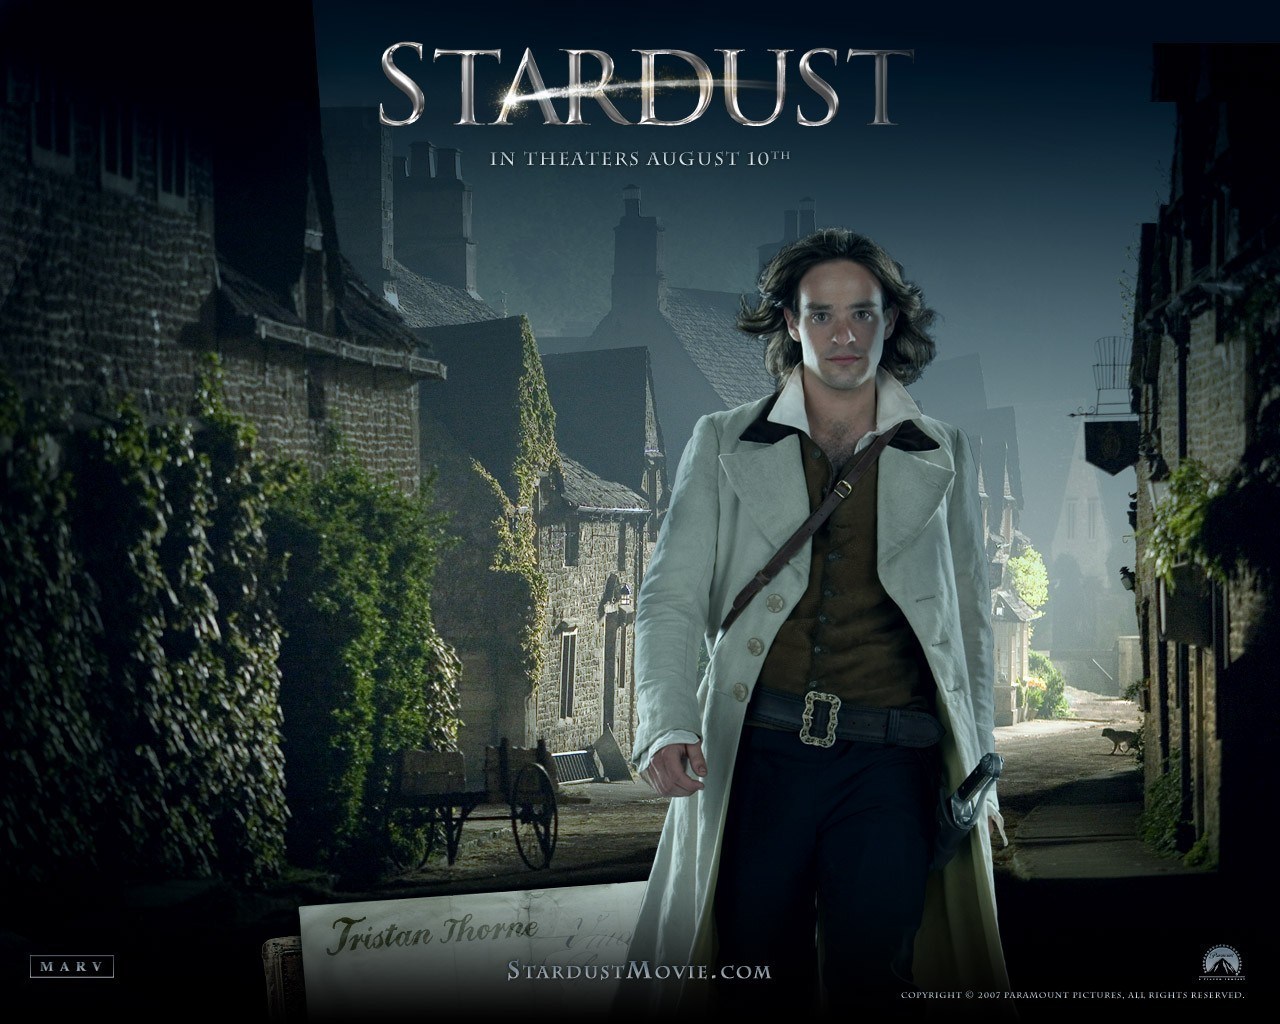 ดูหนังออนไลน์ Stardust ศึกมหัศจรรย์ ปาฏิหาริย์รักจากดวงดาว [DVD Master]